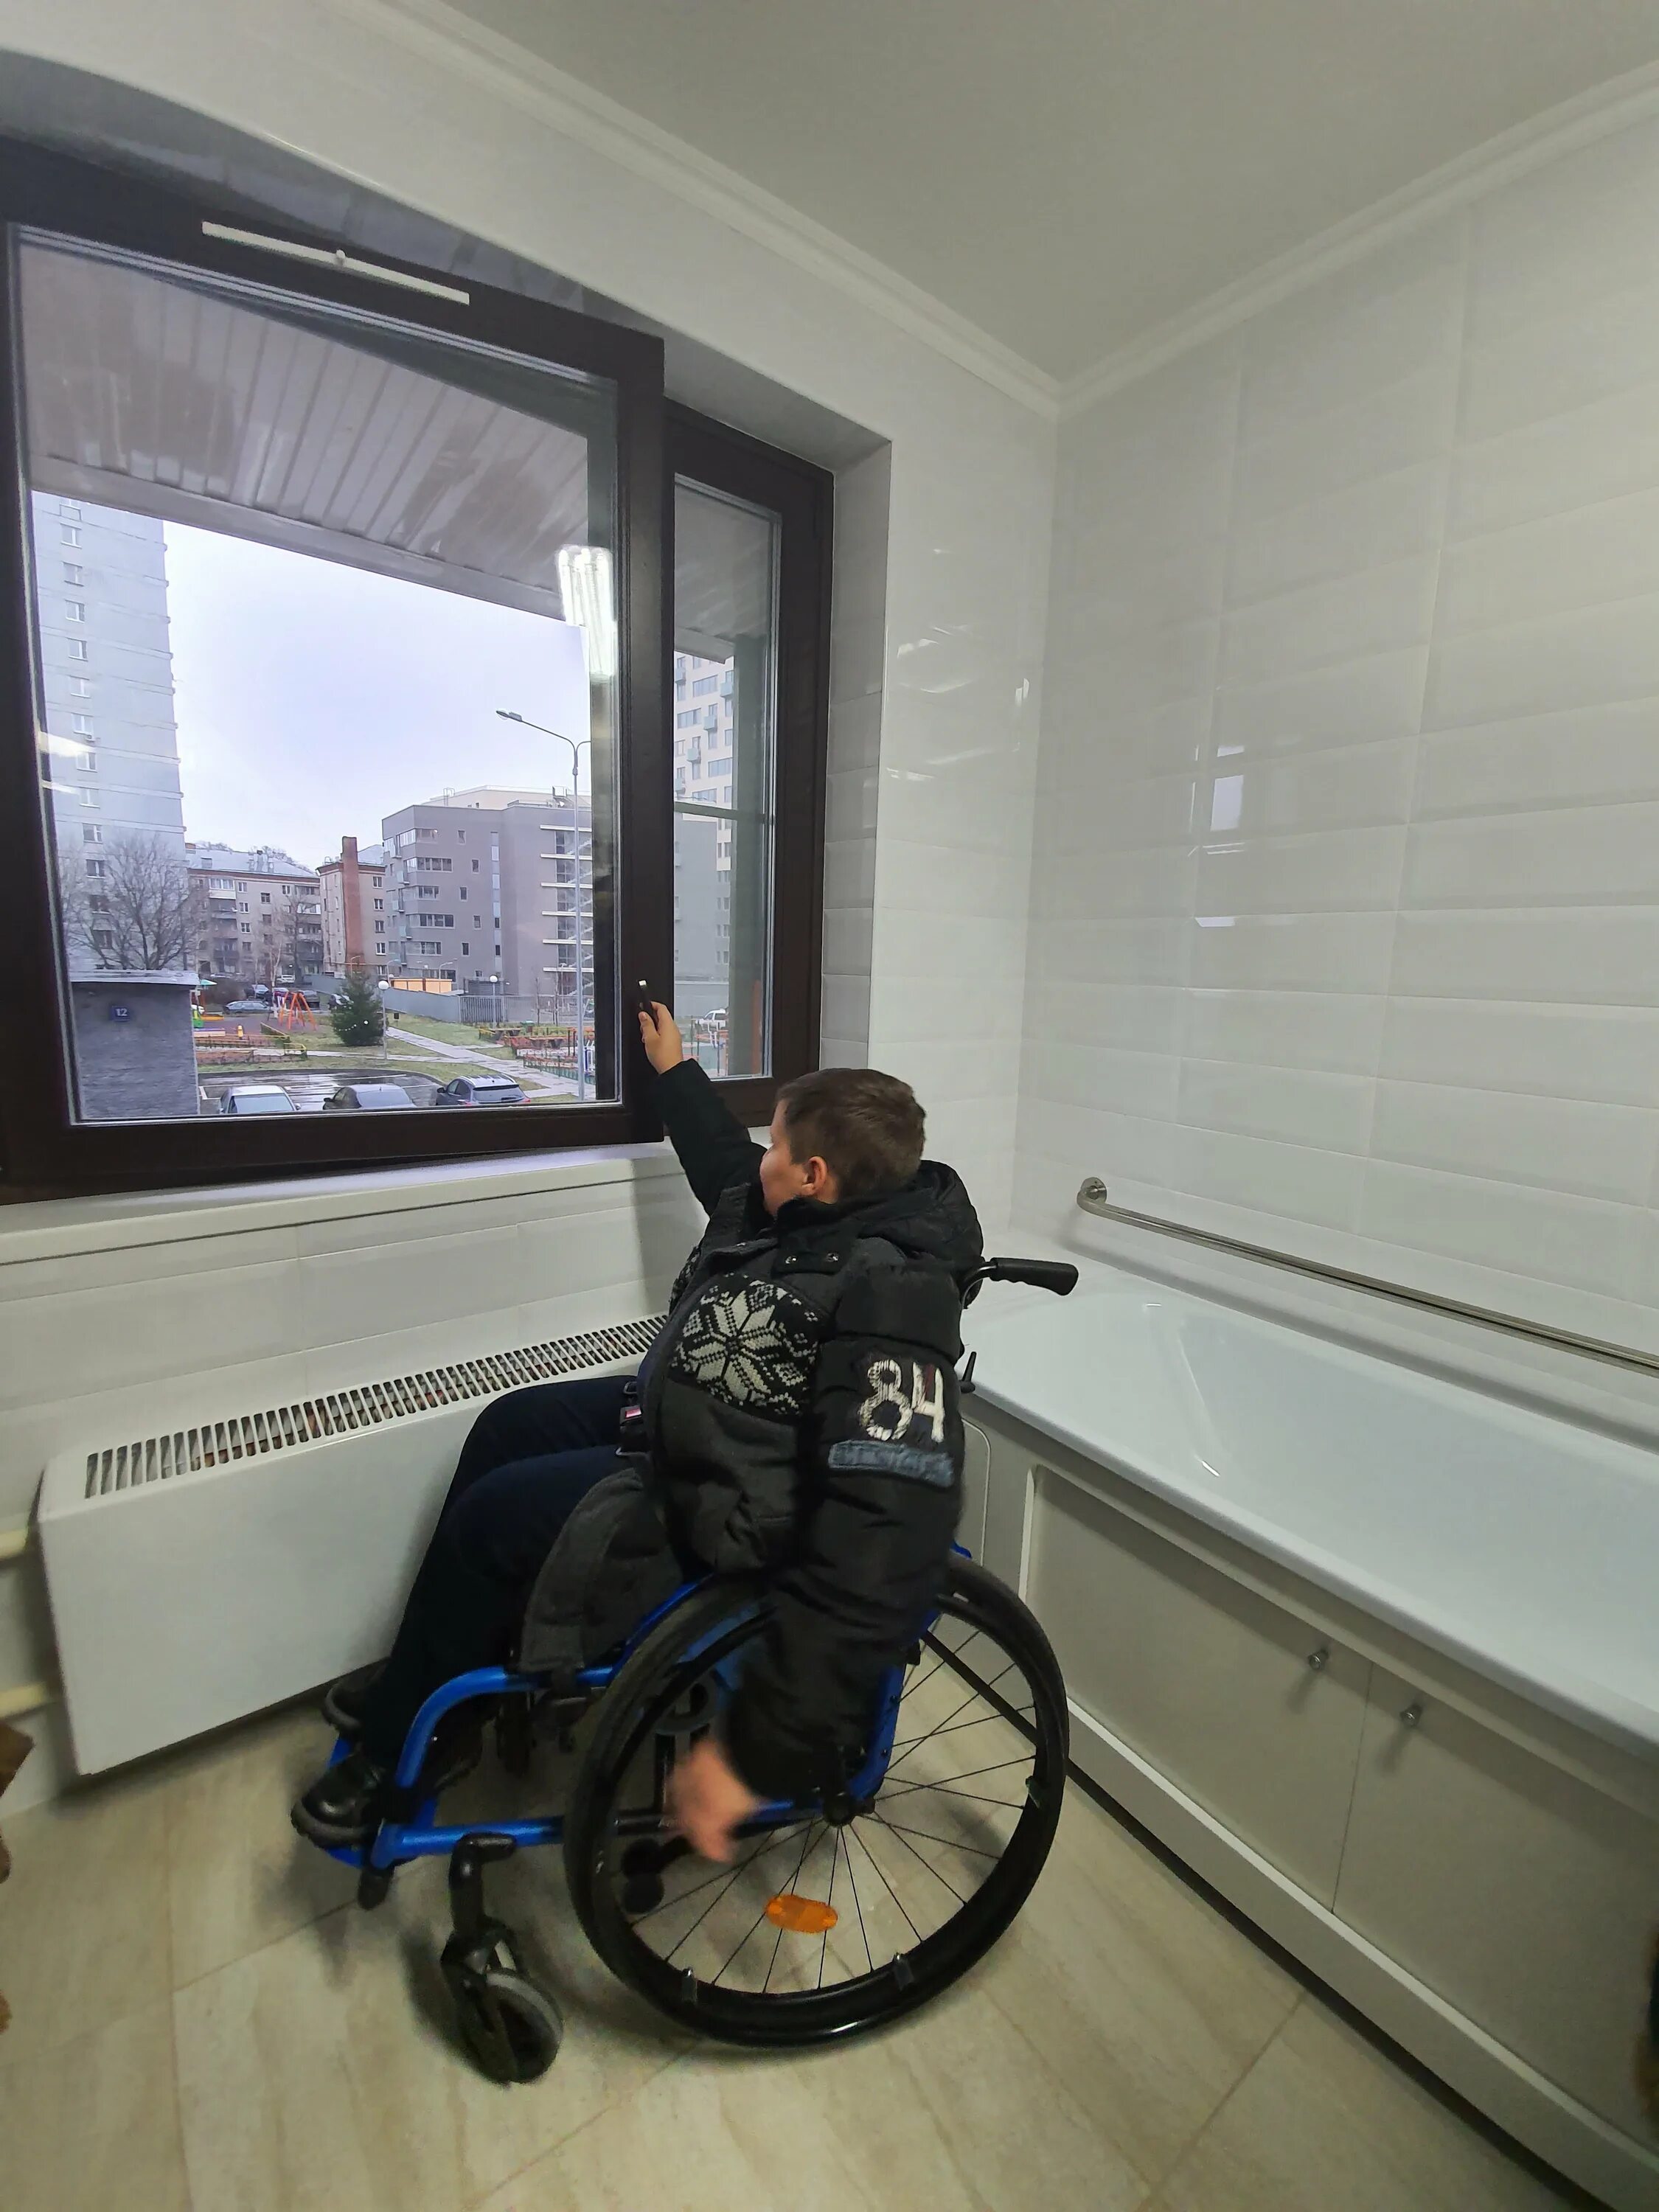 Квартира для инвалида. Квартиры приспособленные для инвалидов. Жильё для инвалидов колясочников. Домик для инвалидов колясочников.